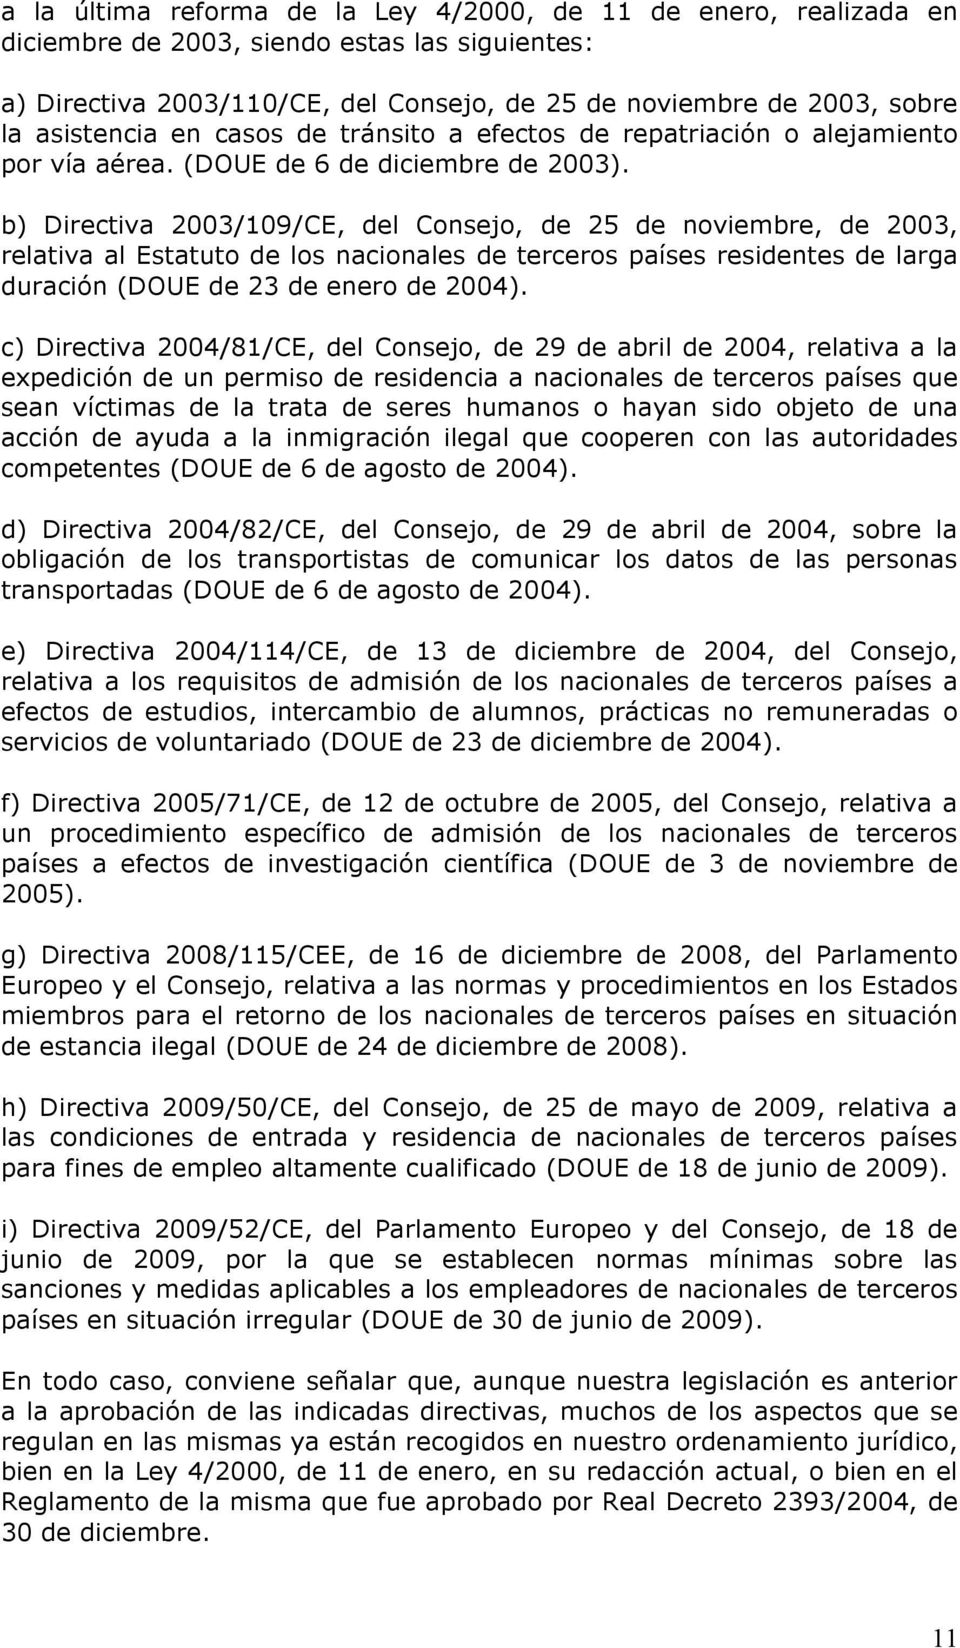 b) Directiva 2003/109/CE, del Consejo, de 25 de noviembre, de 2003, relativa al Estatuto de los nacionales de terceros países residentes de larga duración (DOUE de 23 de enero de 2004).